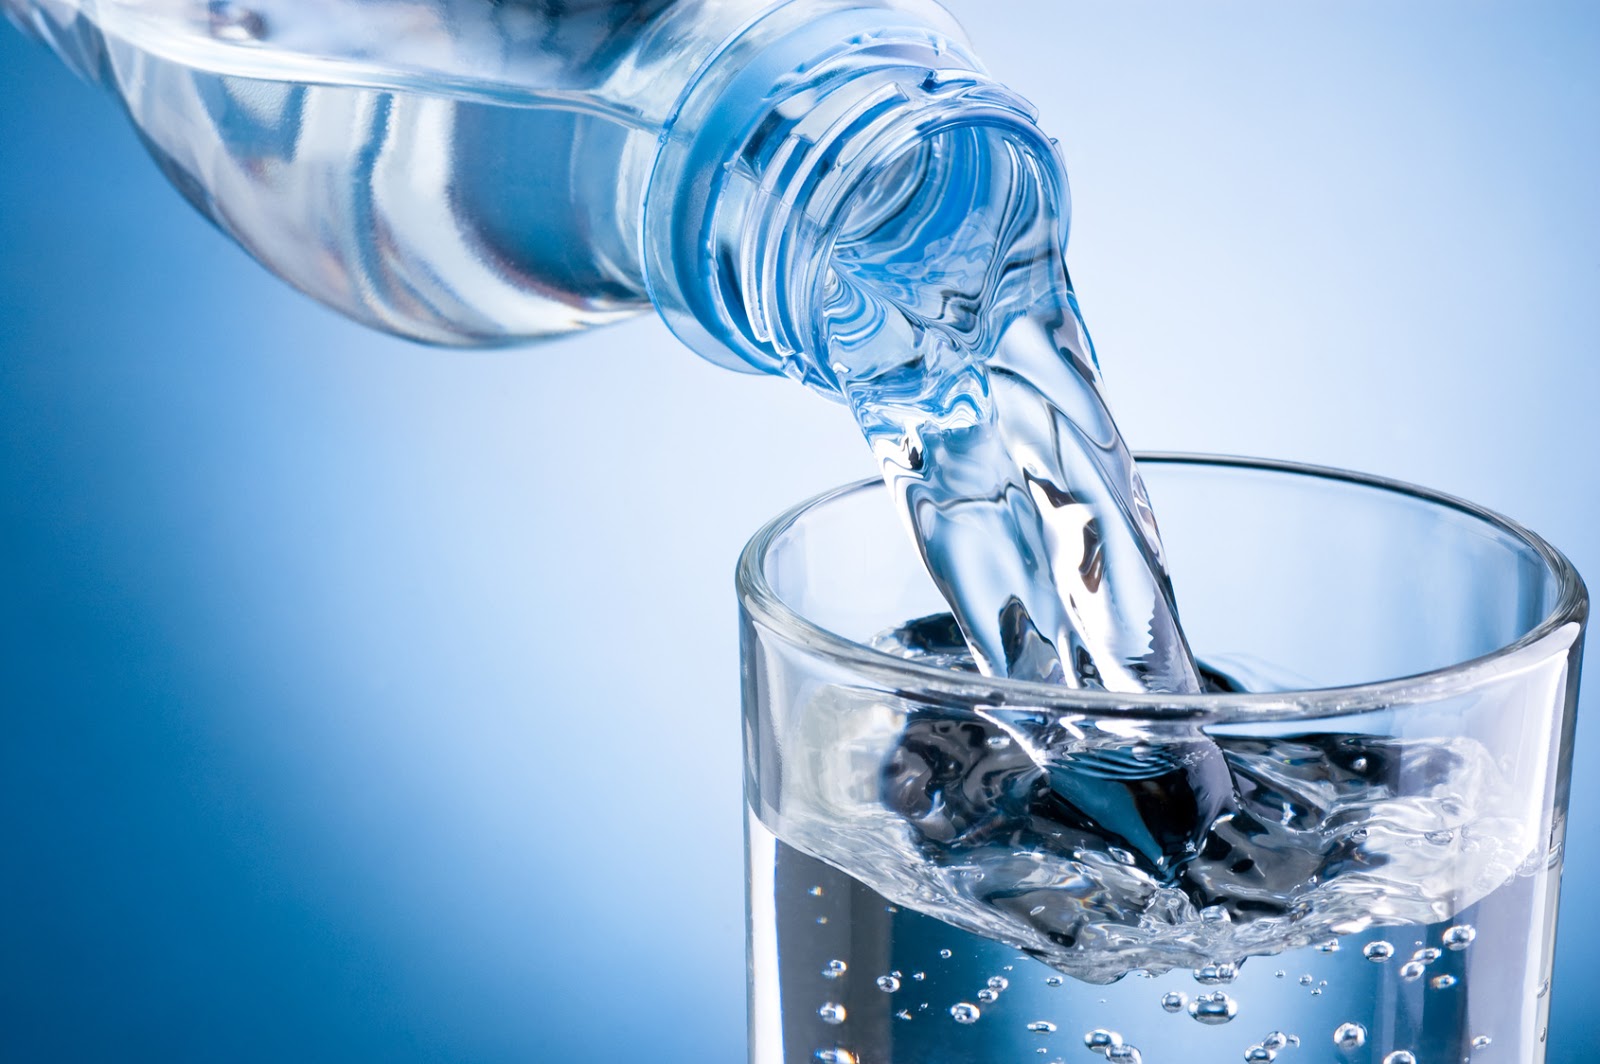 Água: propriedades, quantidade ideal e benefícios